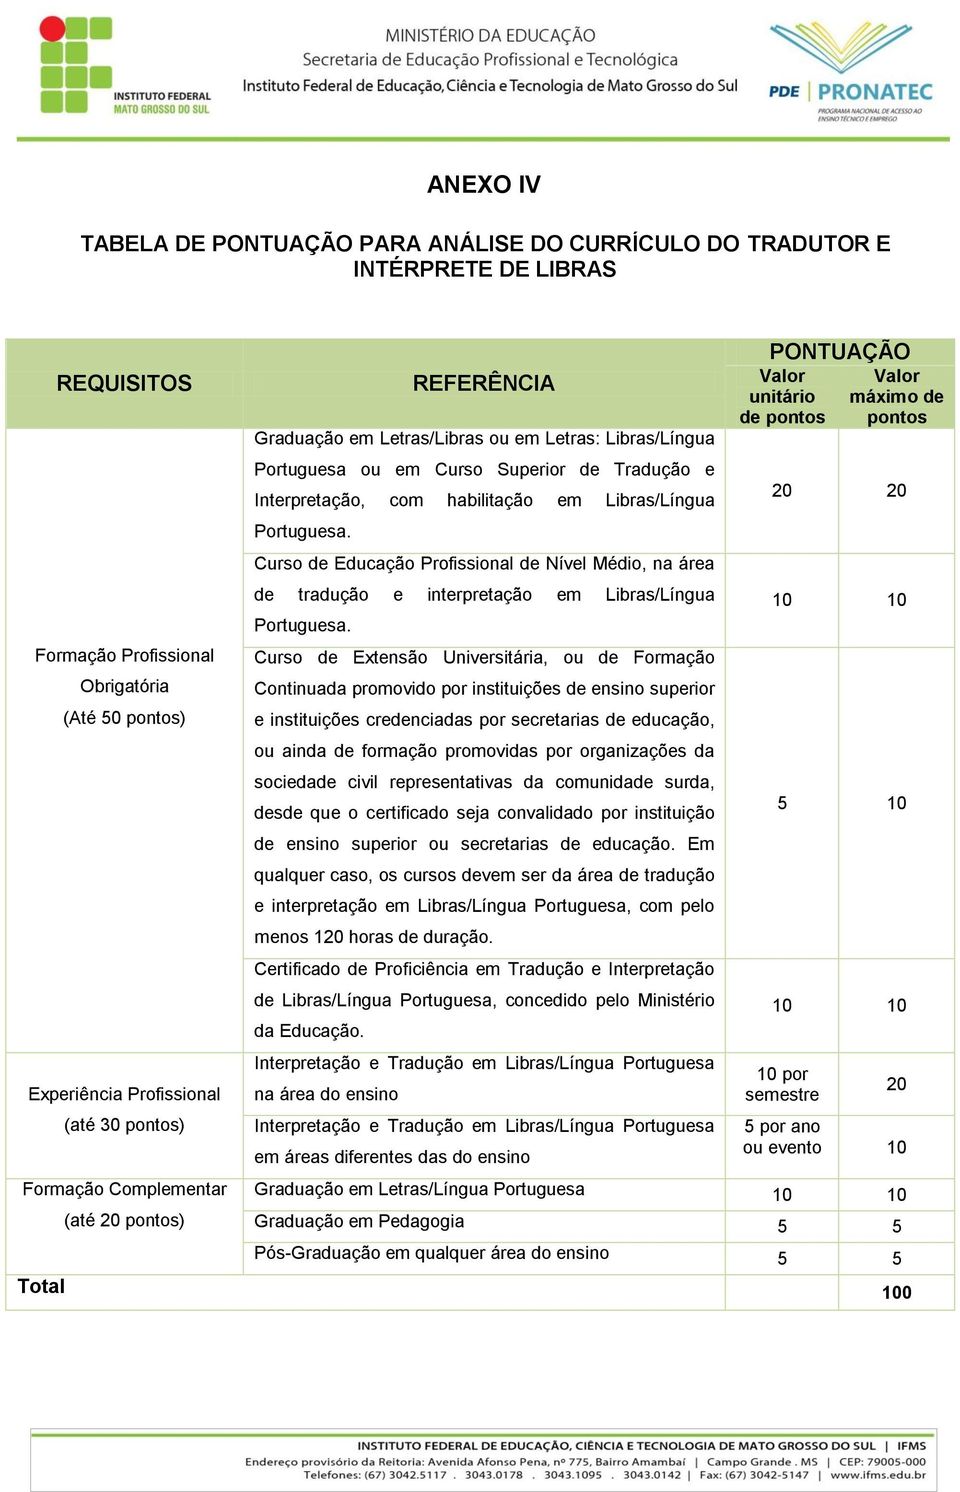 Portuguesa. Curso de Educação Profissional de Nível Médio, na área de tradução e interpretação em Libras/Língua Portuguesa.